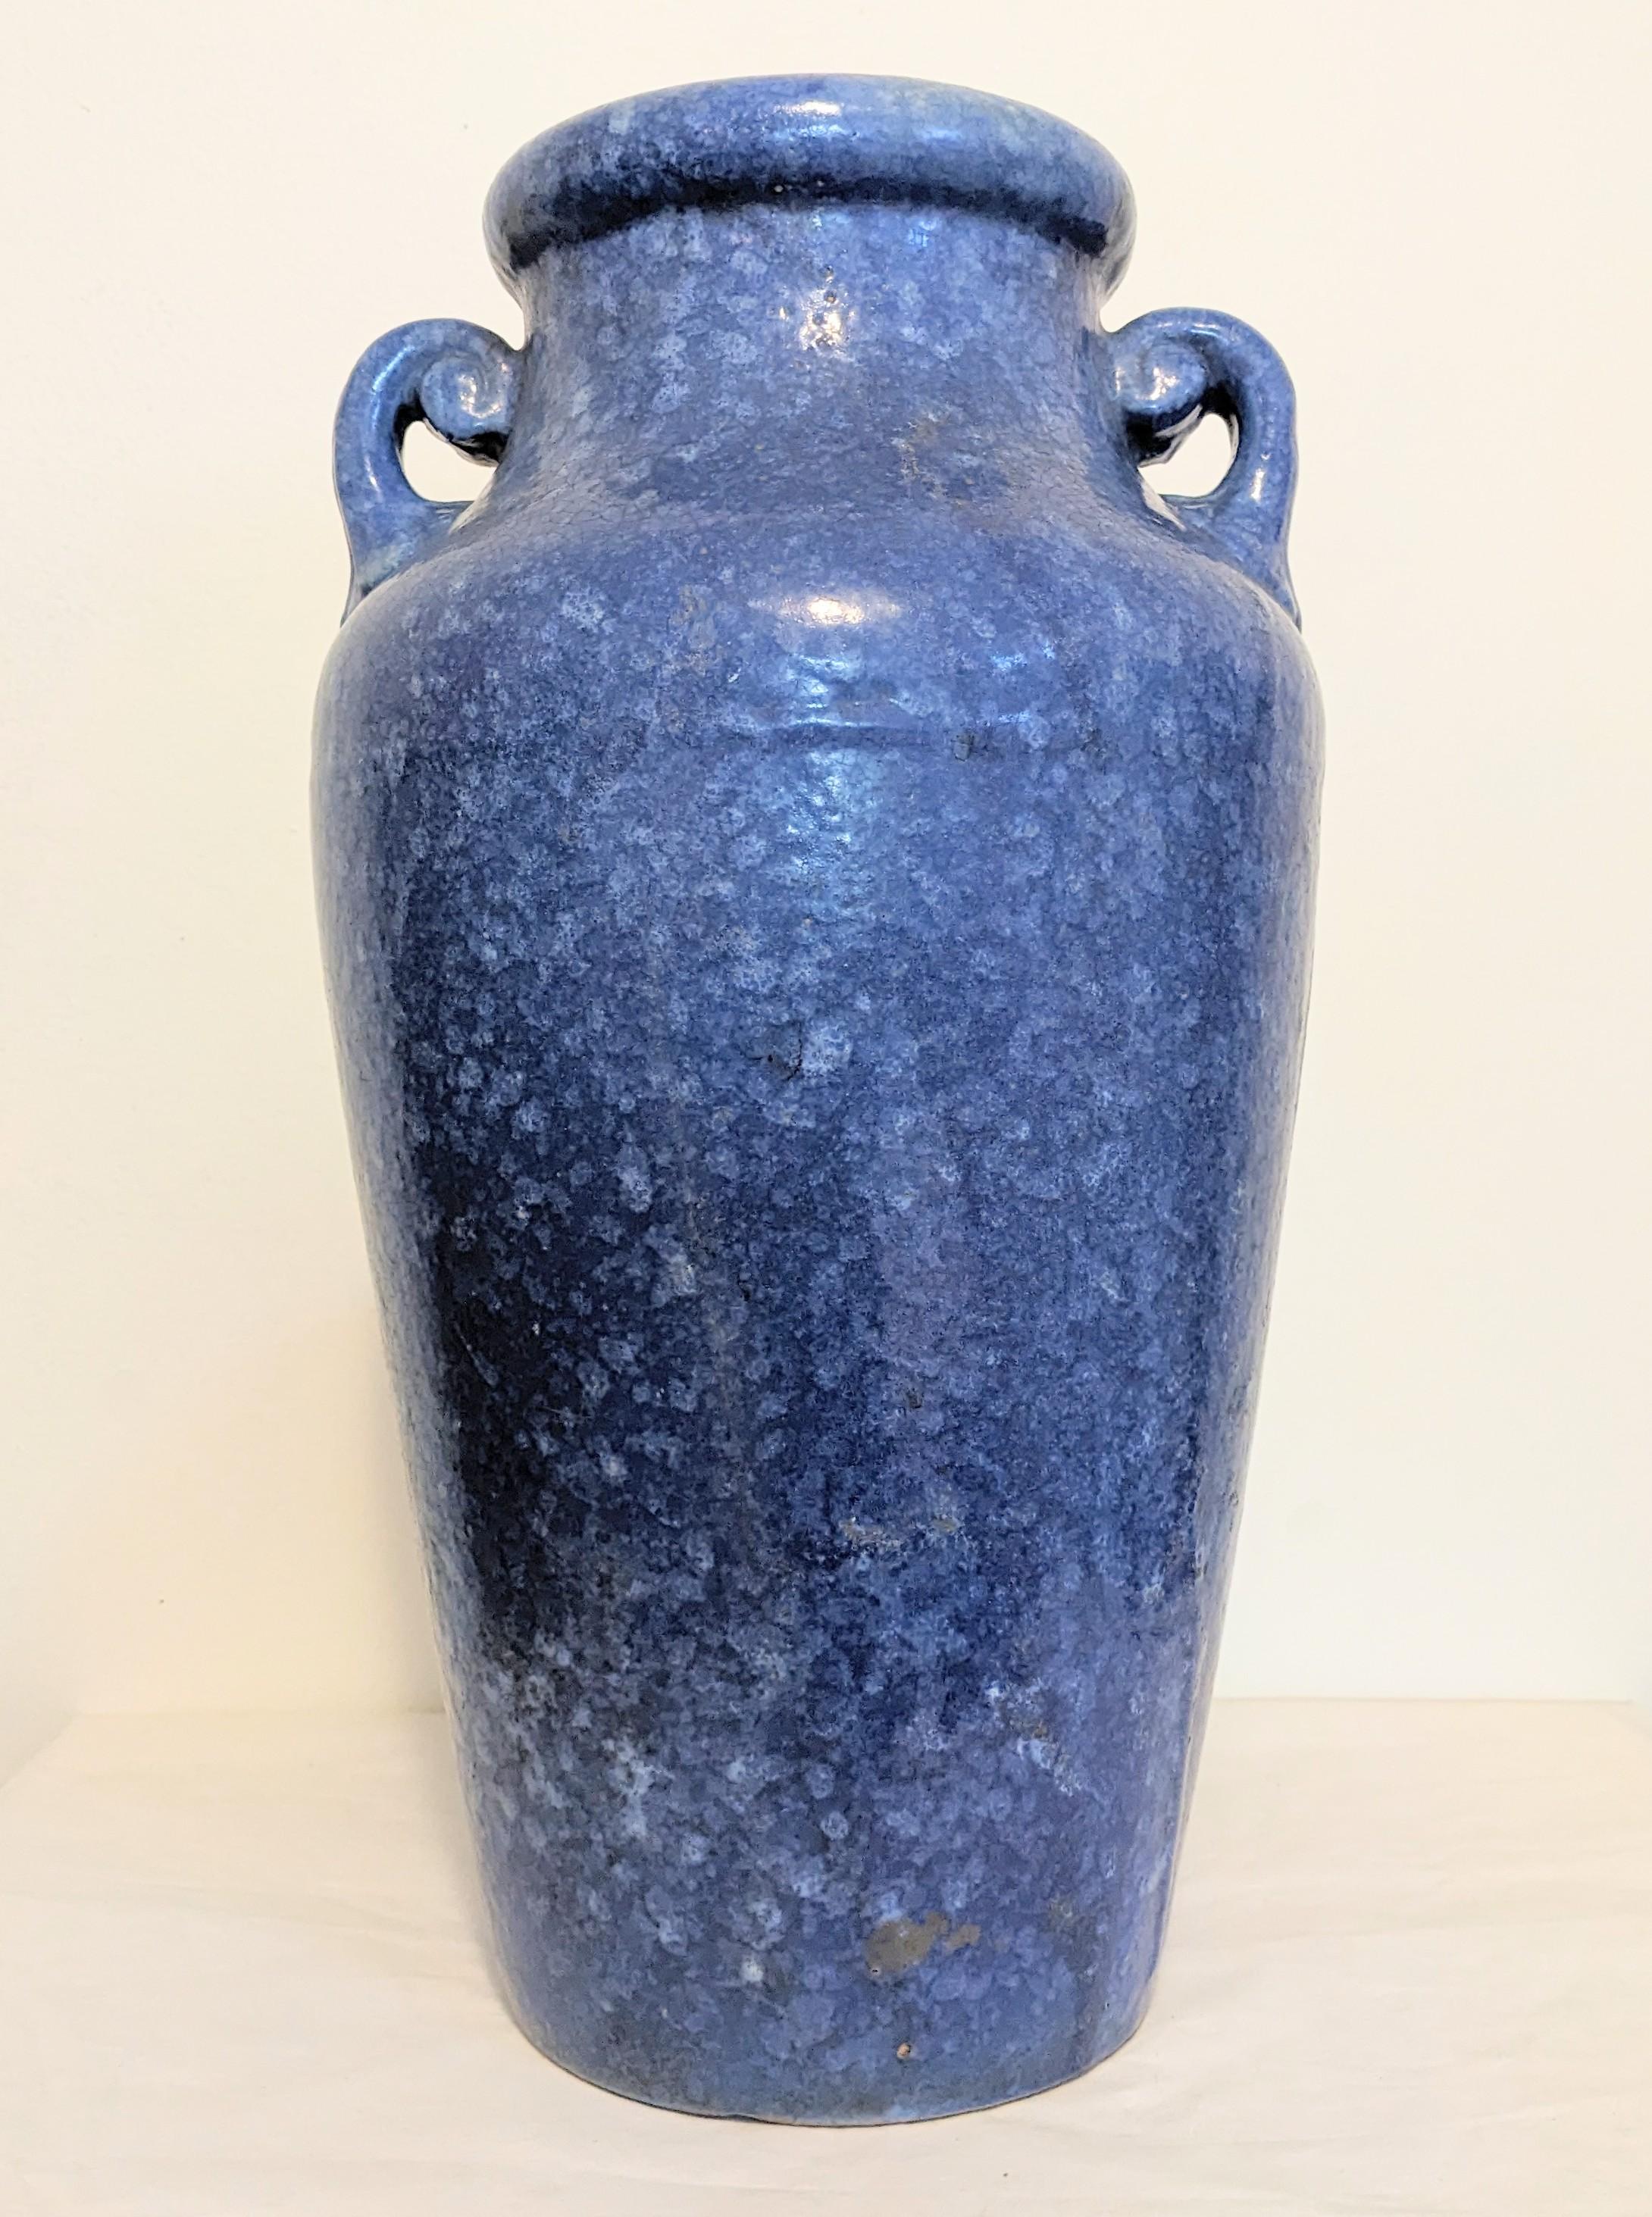 Imposant vase Weller Brush Art McCoy en bleu chiné, datant des années 1930. Grand format inhabituel avec 